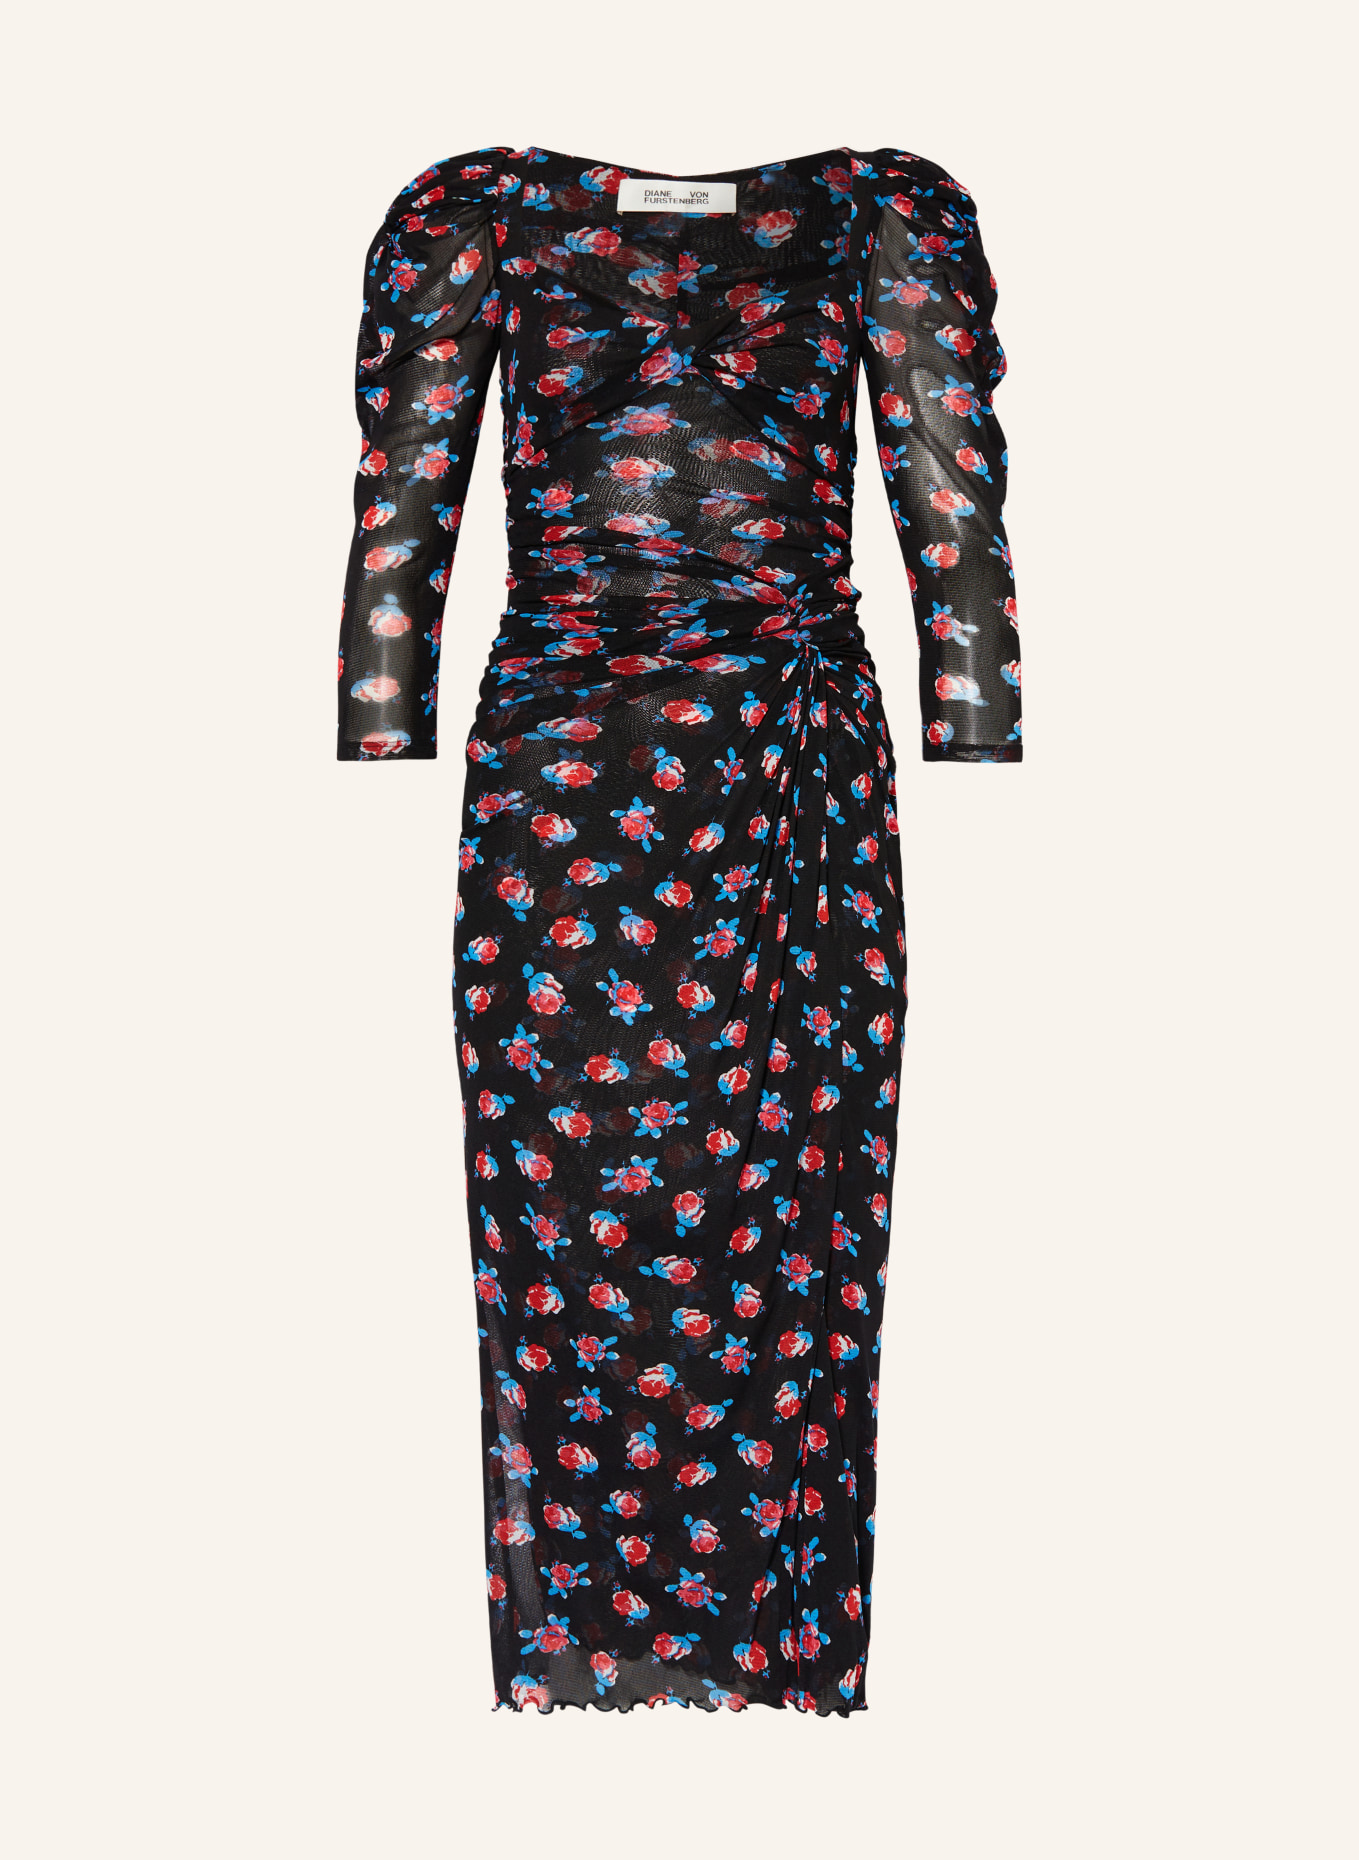 DIANE VON FURSTENBERG Mesh-Kleid BETTINA mit 3/4-Arm, Farbe: DUNKELBLAU/ ROT/ HELLBLAU (Bild 1)